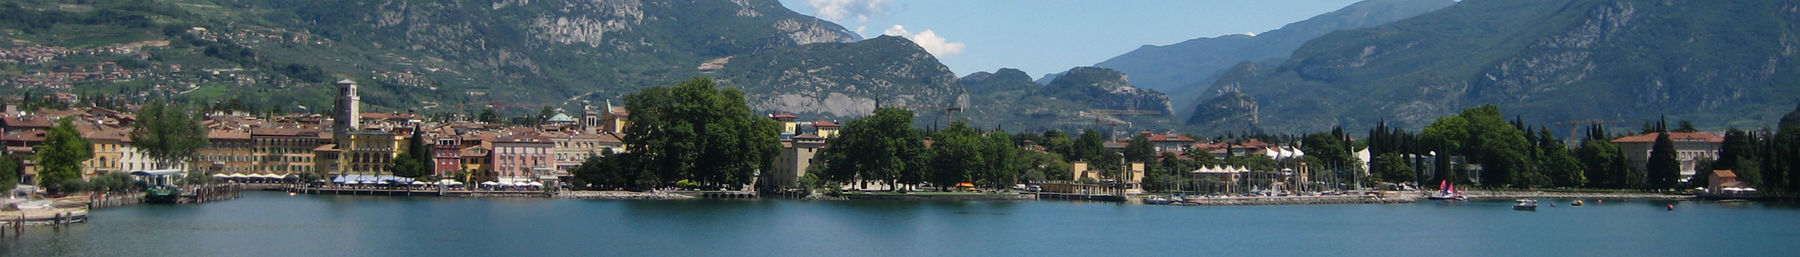 Riva del Garda banner.jpg